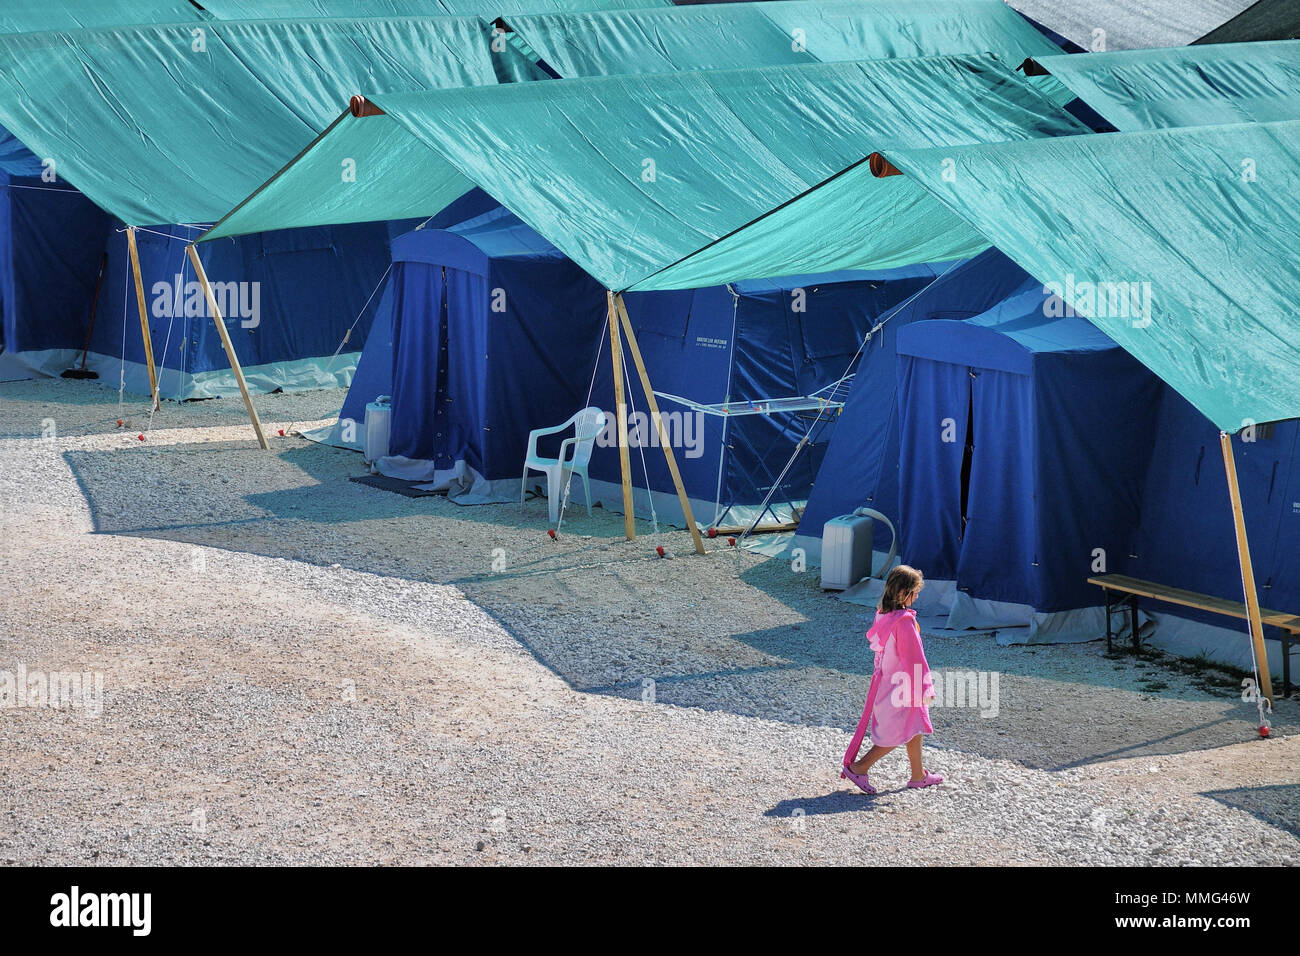 Camp de tentes de réfugiés du séisme avec lonely child walking Aquila Italie Août 2009 Banque D'Images